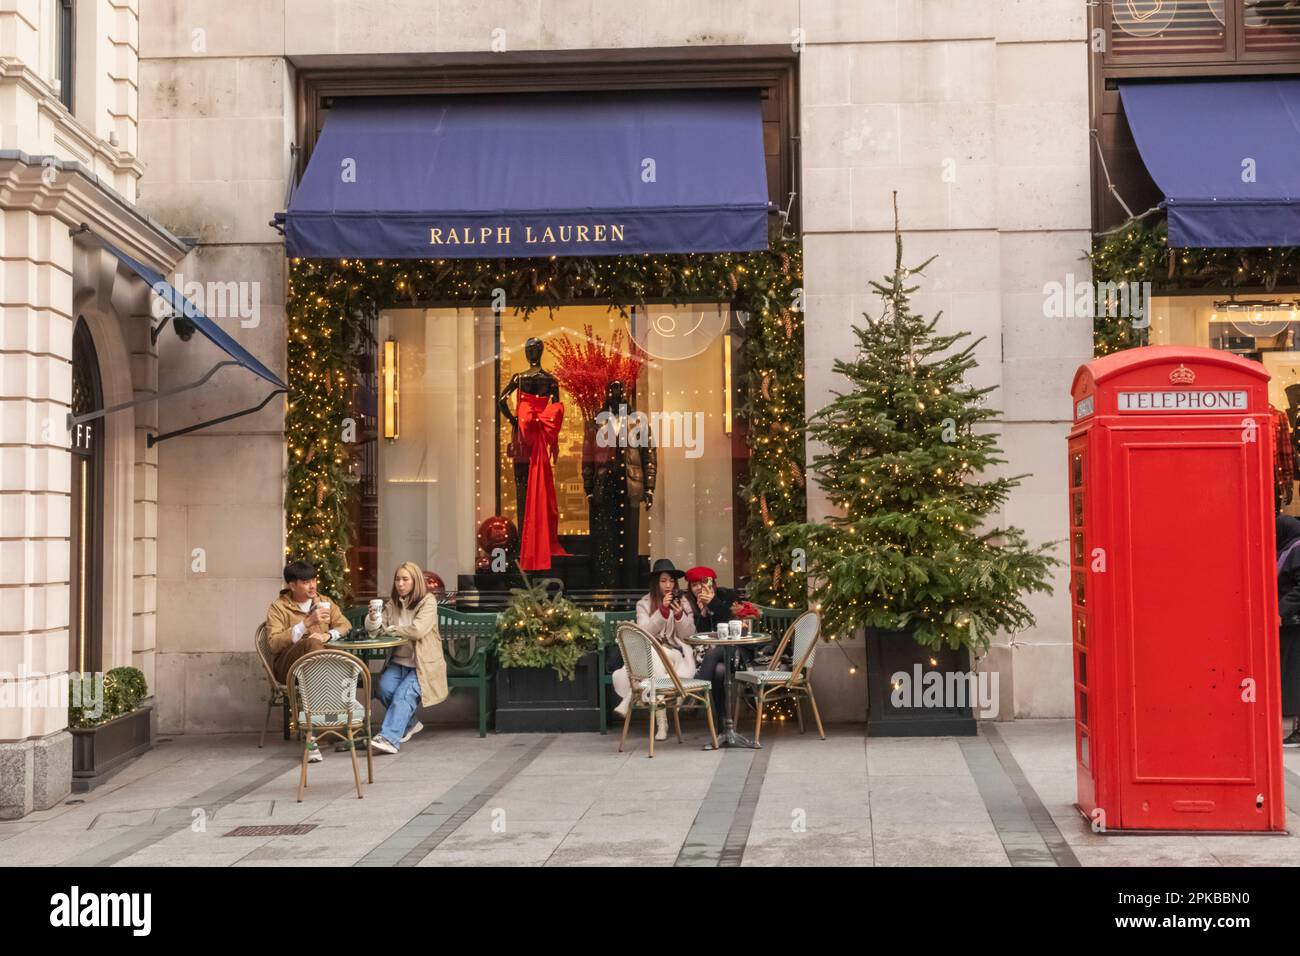 England, London, Piccadilly, New Bond Street, Außenansicht des Ralph Lauren Store mit Weihnachtsdekorationen und traditioneller roter Telefonzelle Stockfoto